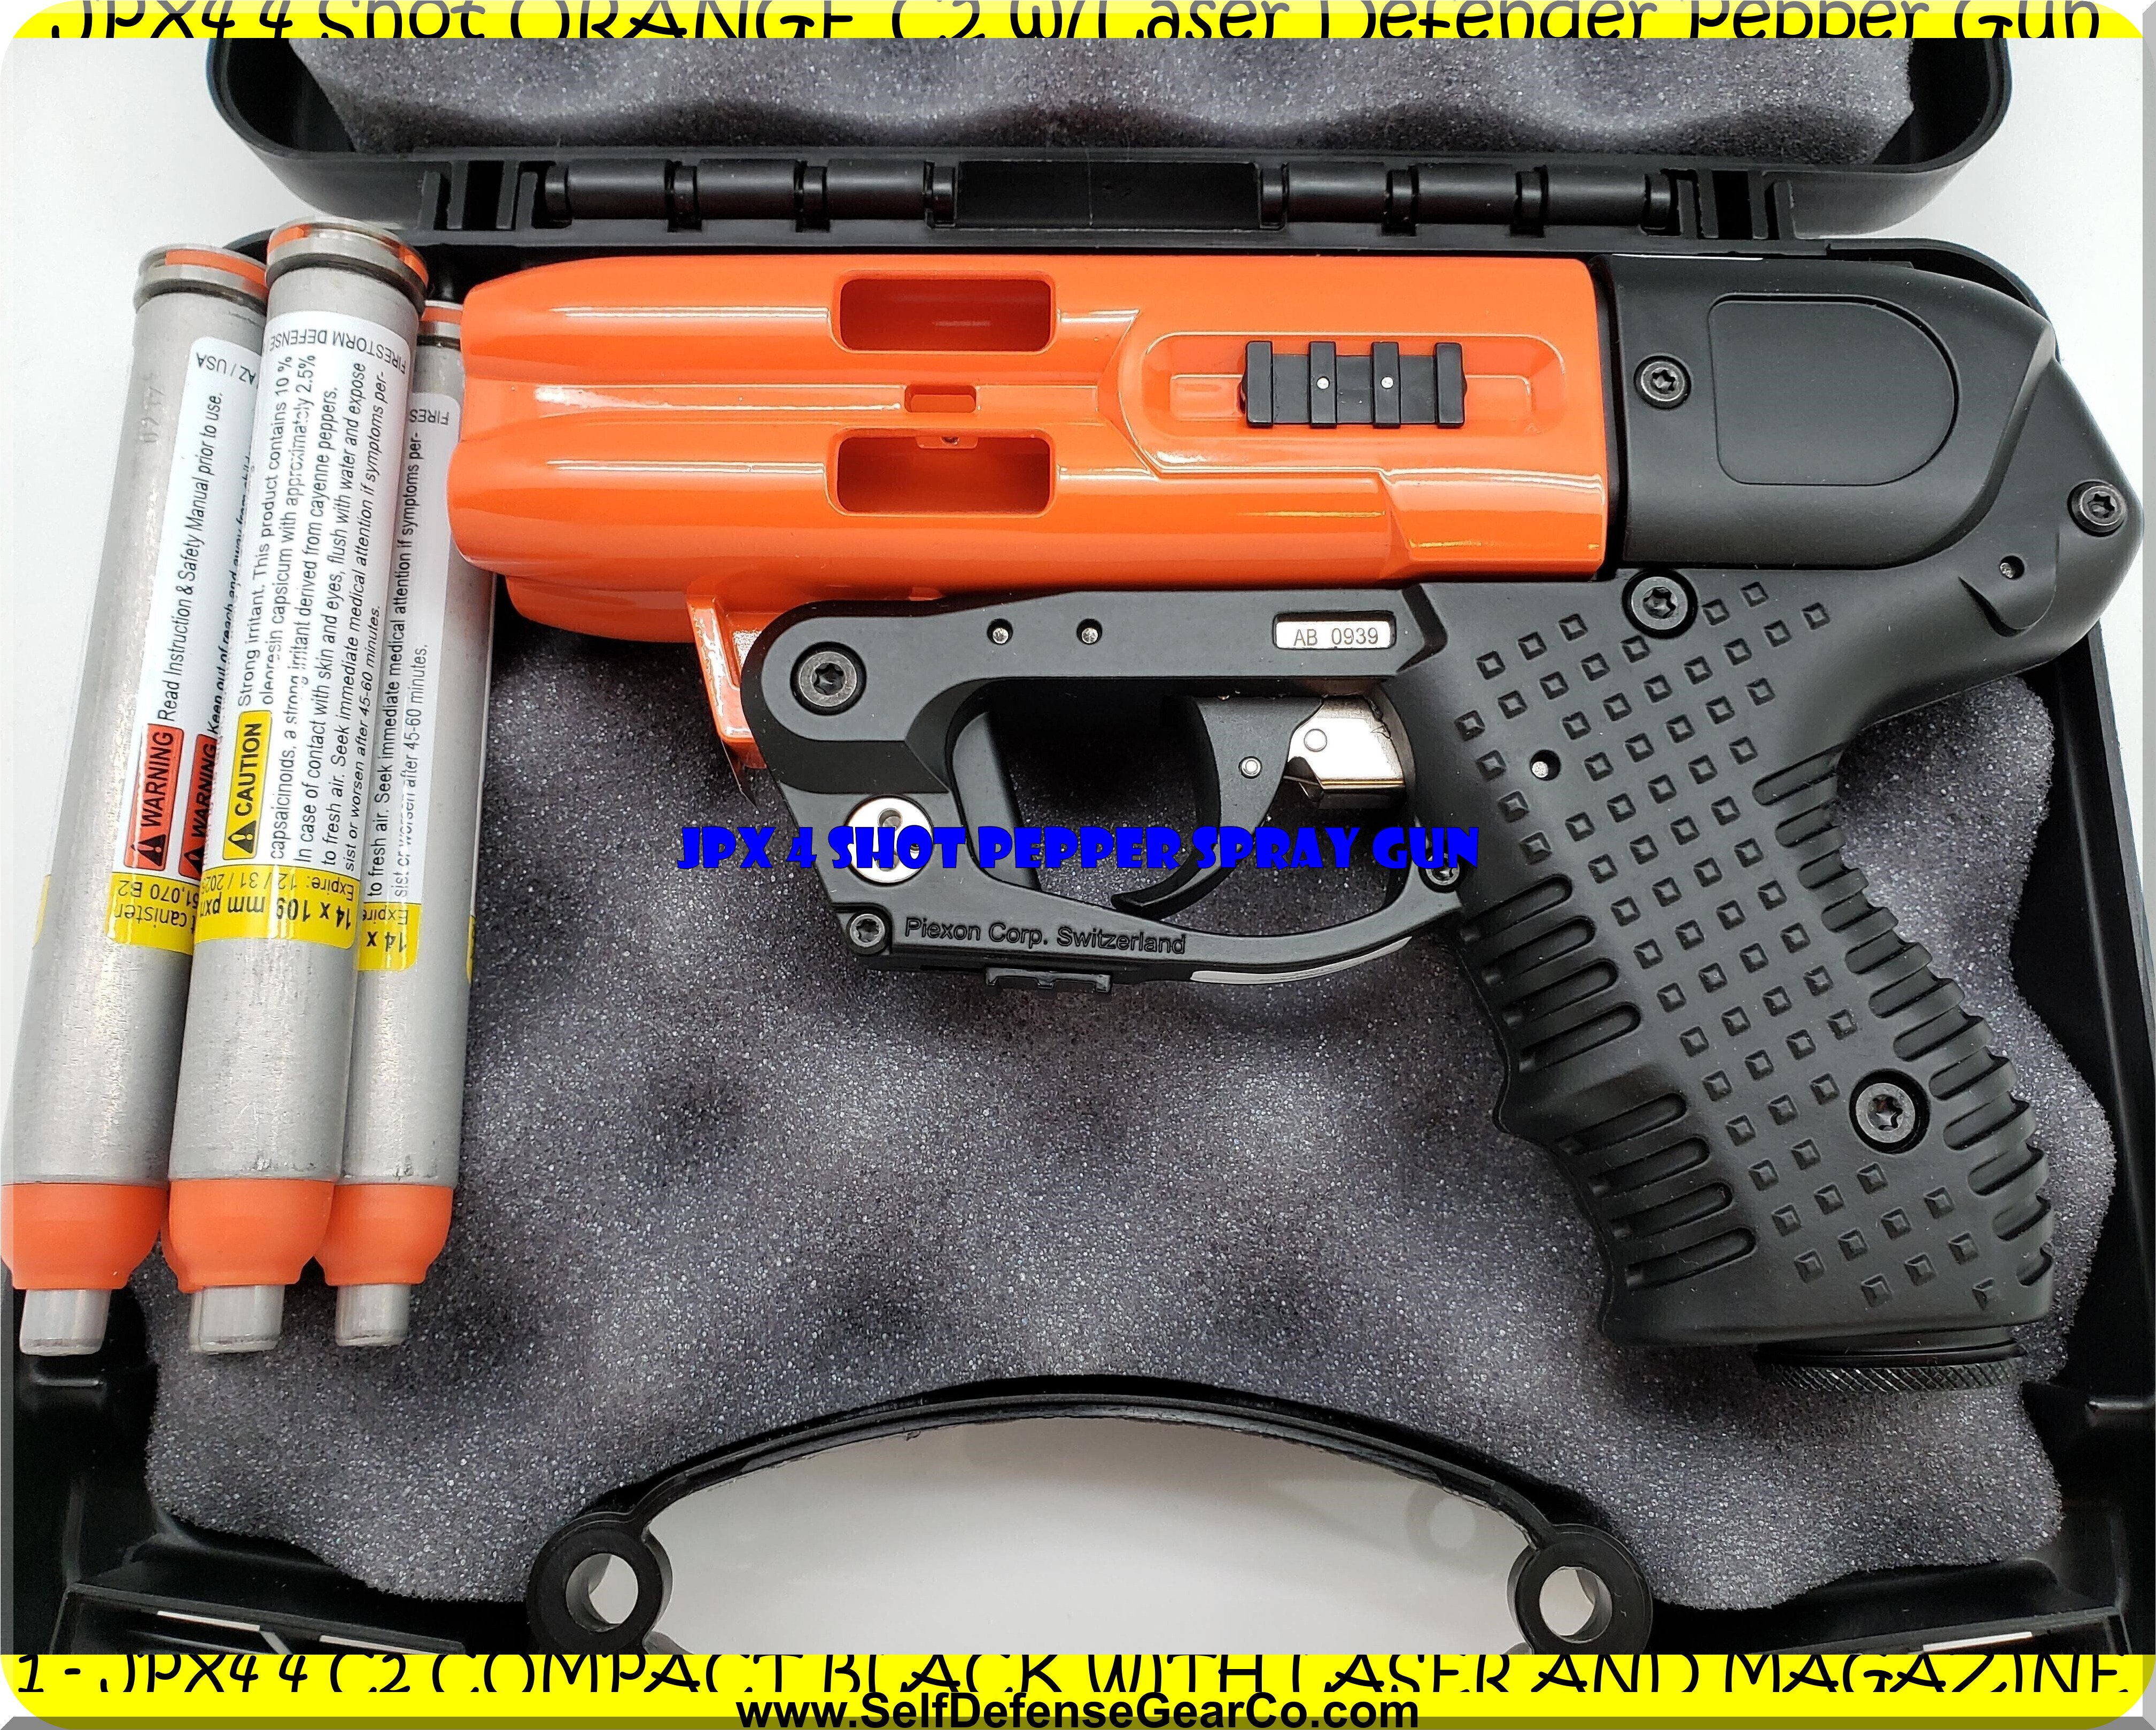 JPX4 4 Shot ORANGE C2 w/Laser Defender Pepper Gun